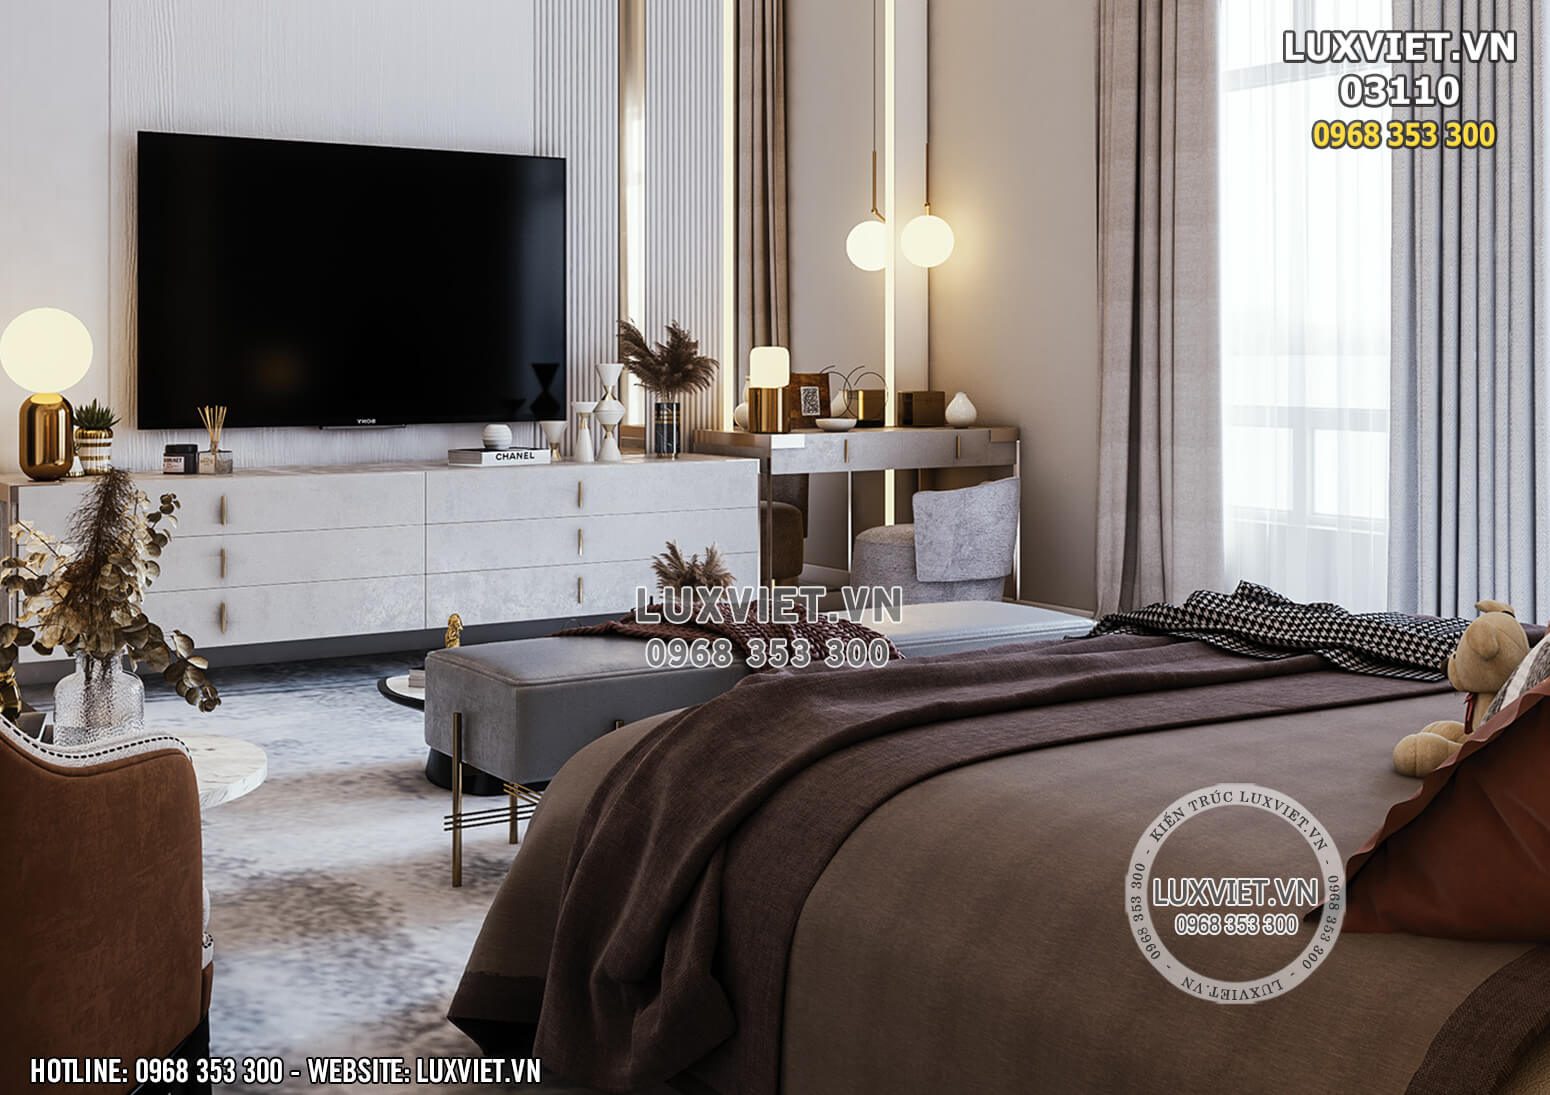 Hình ảnh: Không gian phòng ngủ đẹp được thiết kế hài hòa, tinh tế - LV 03110